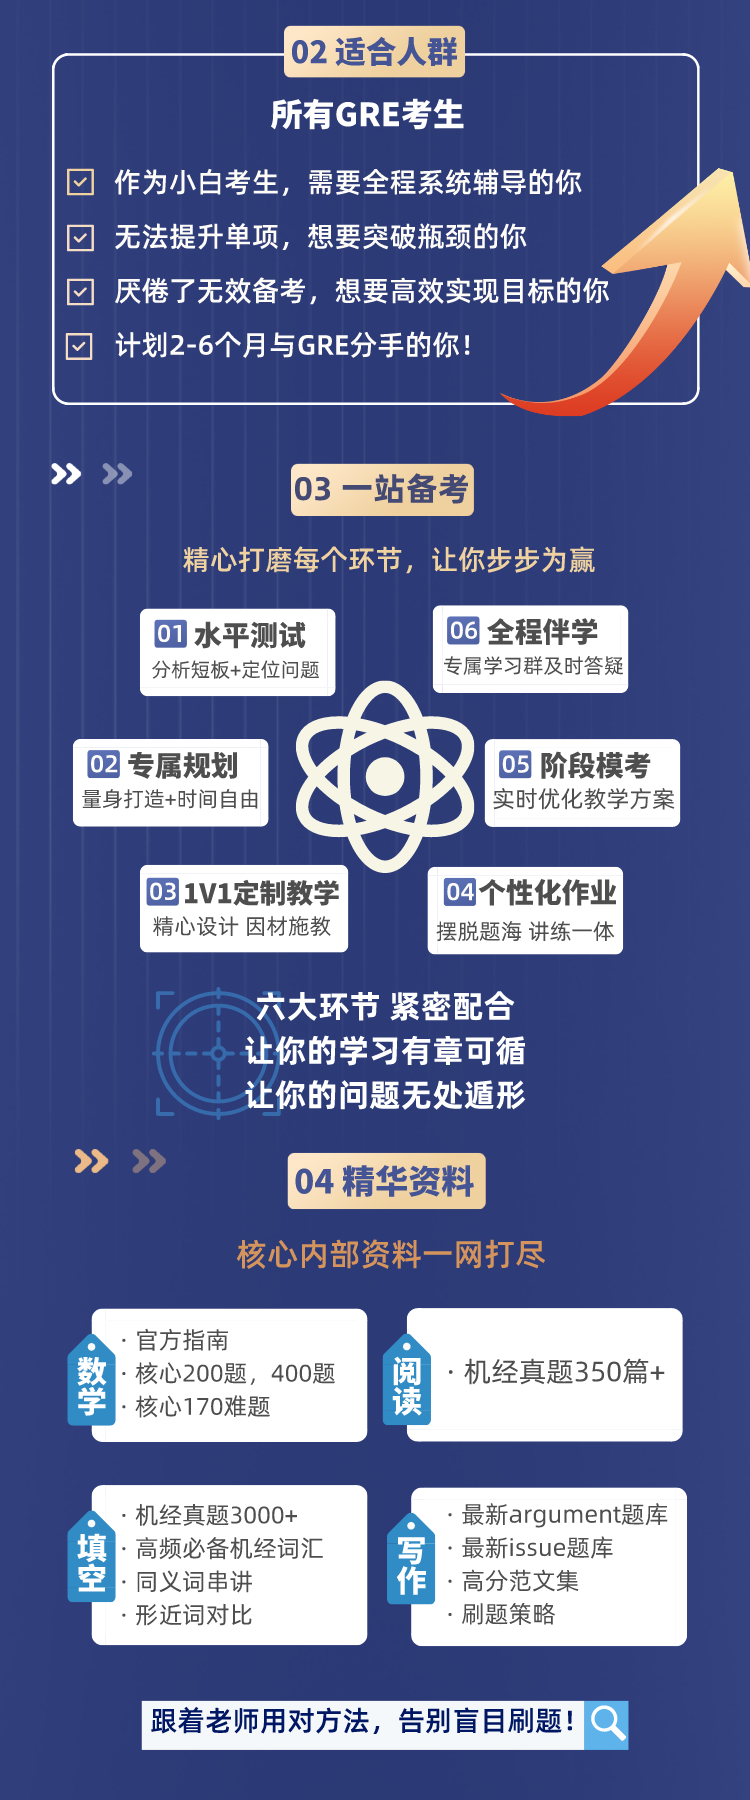 https://simg01.gaodunwangxiao.com/uploadfiles/product-center/202210/24/0deb3_20221024181739.png